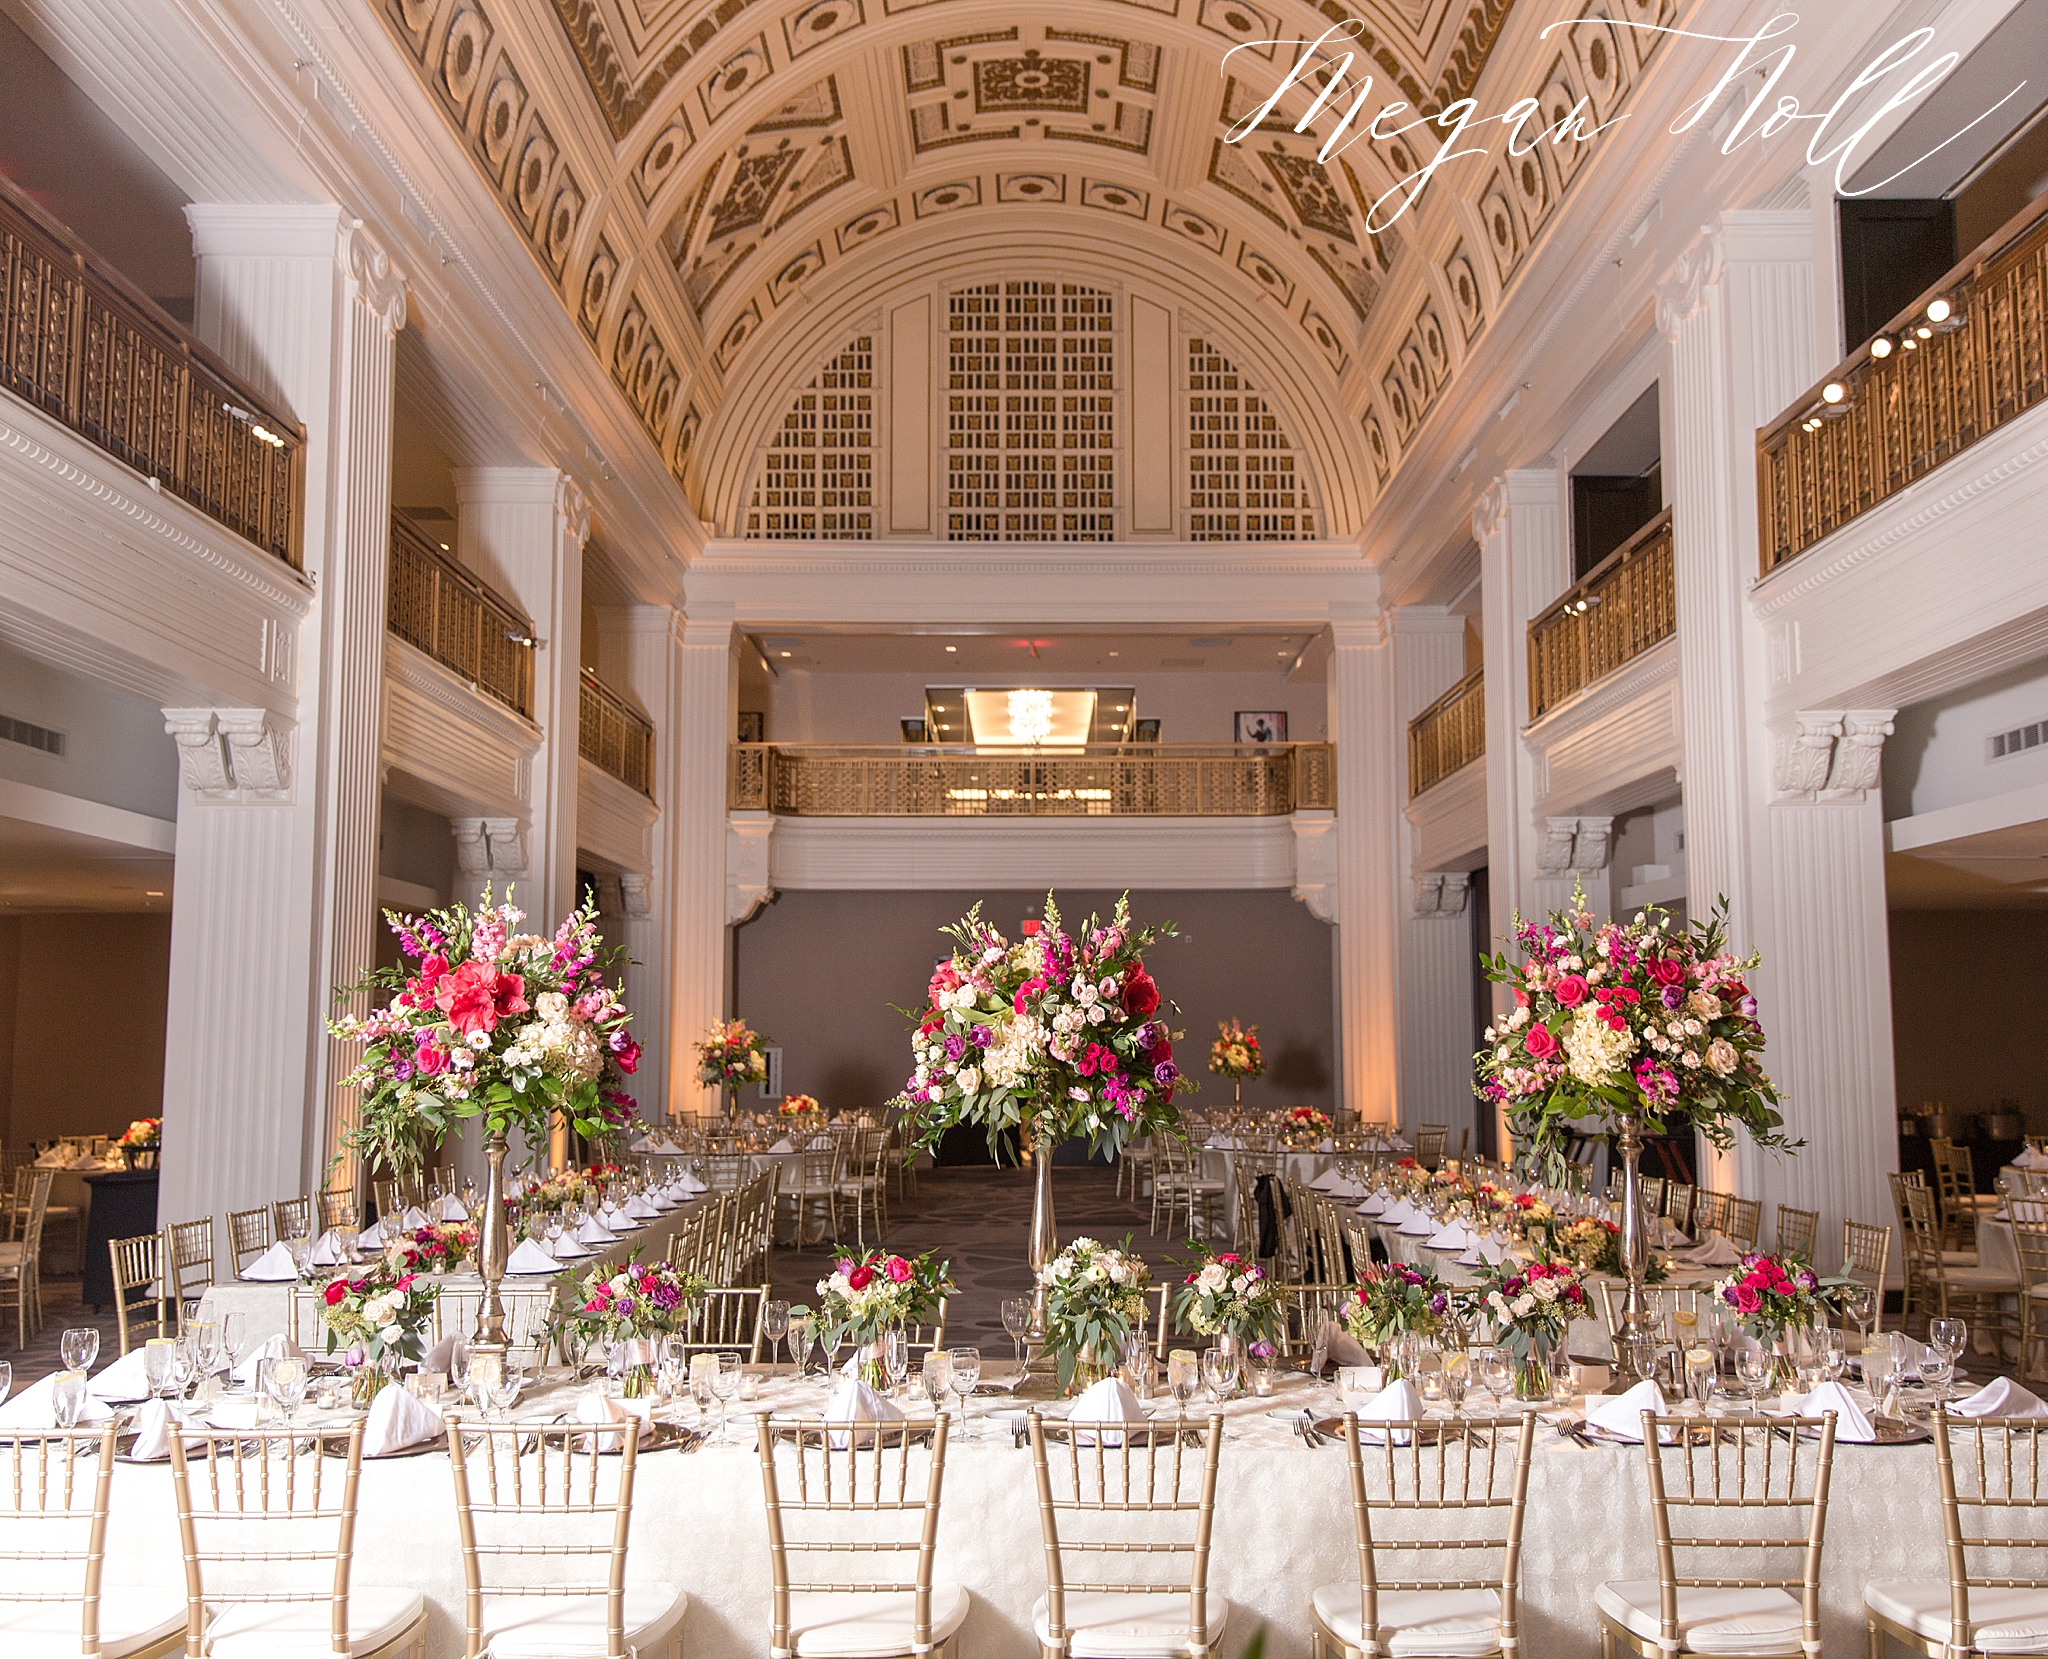 The Renaissance is a top wedding venue in Cincinnati